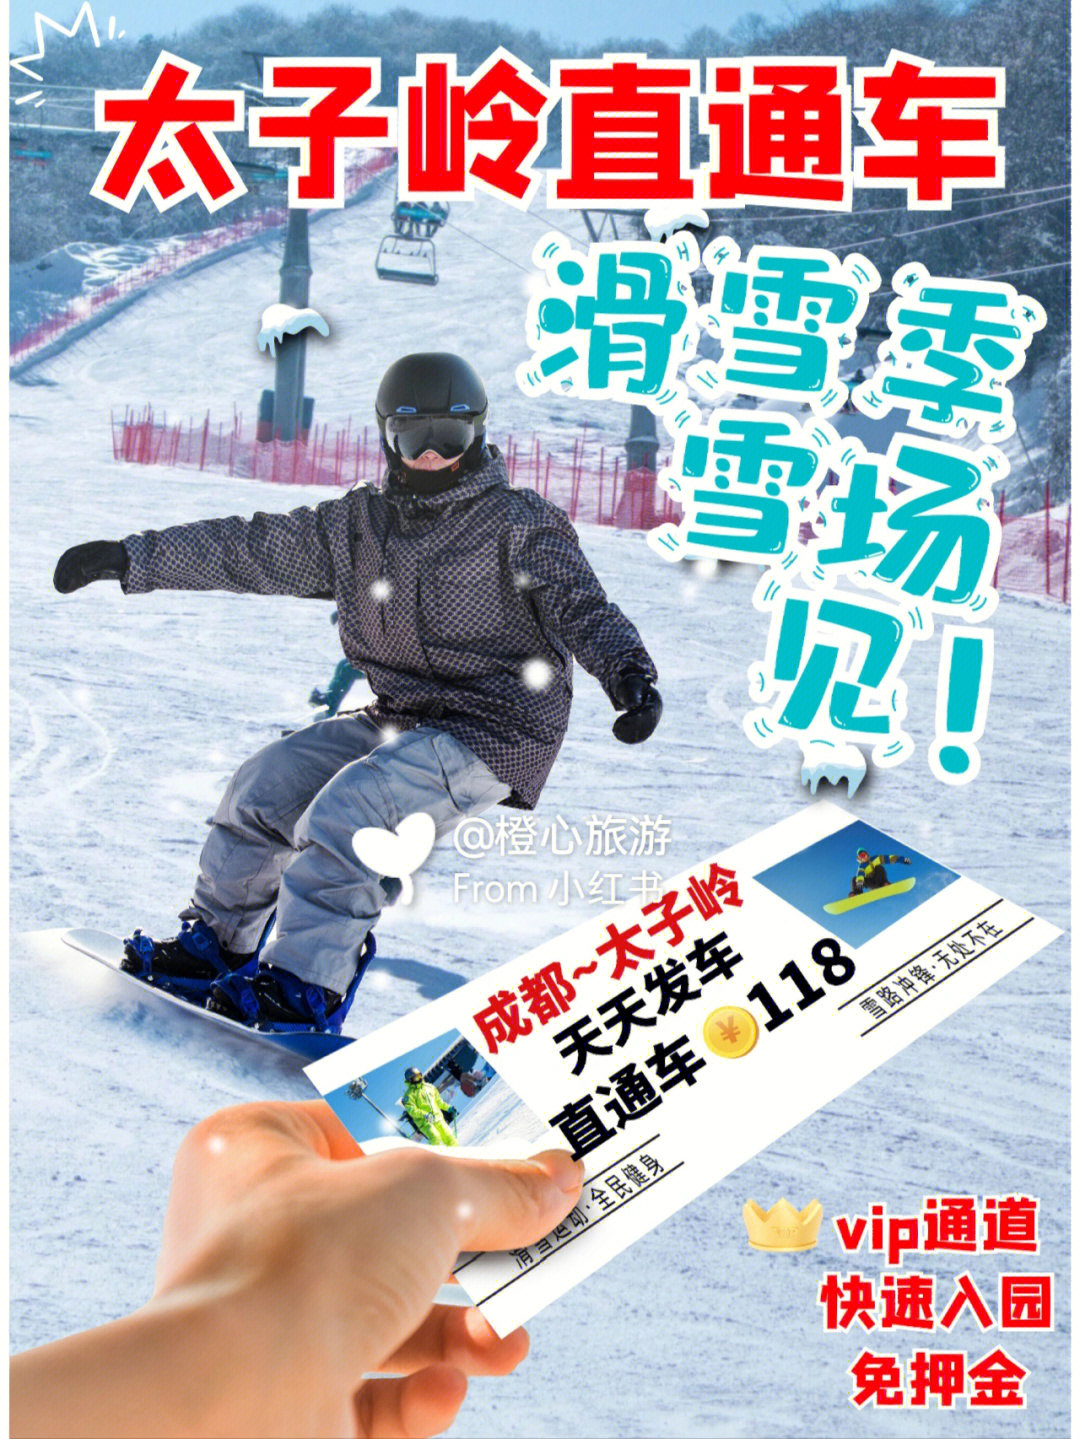 太子岭滑雪场儿童票图片